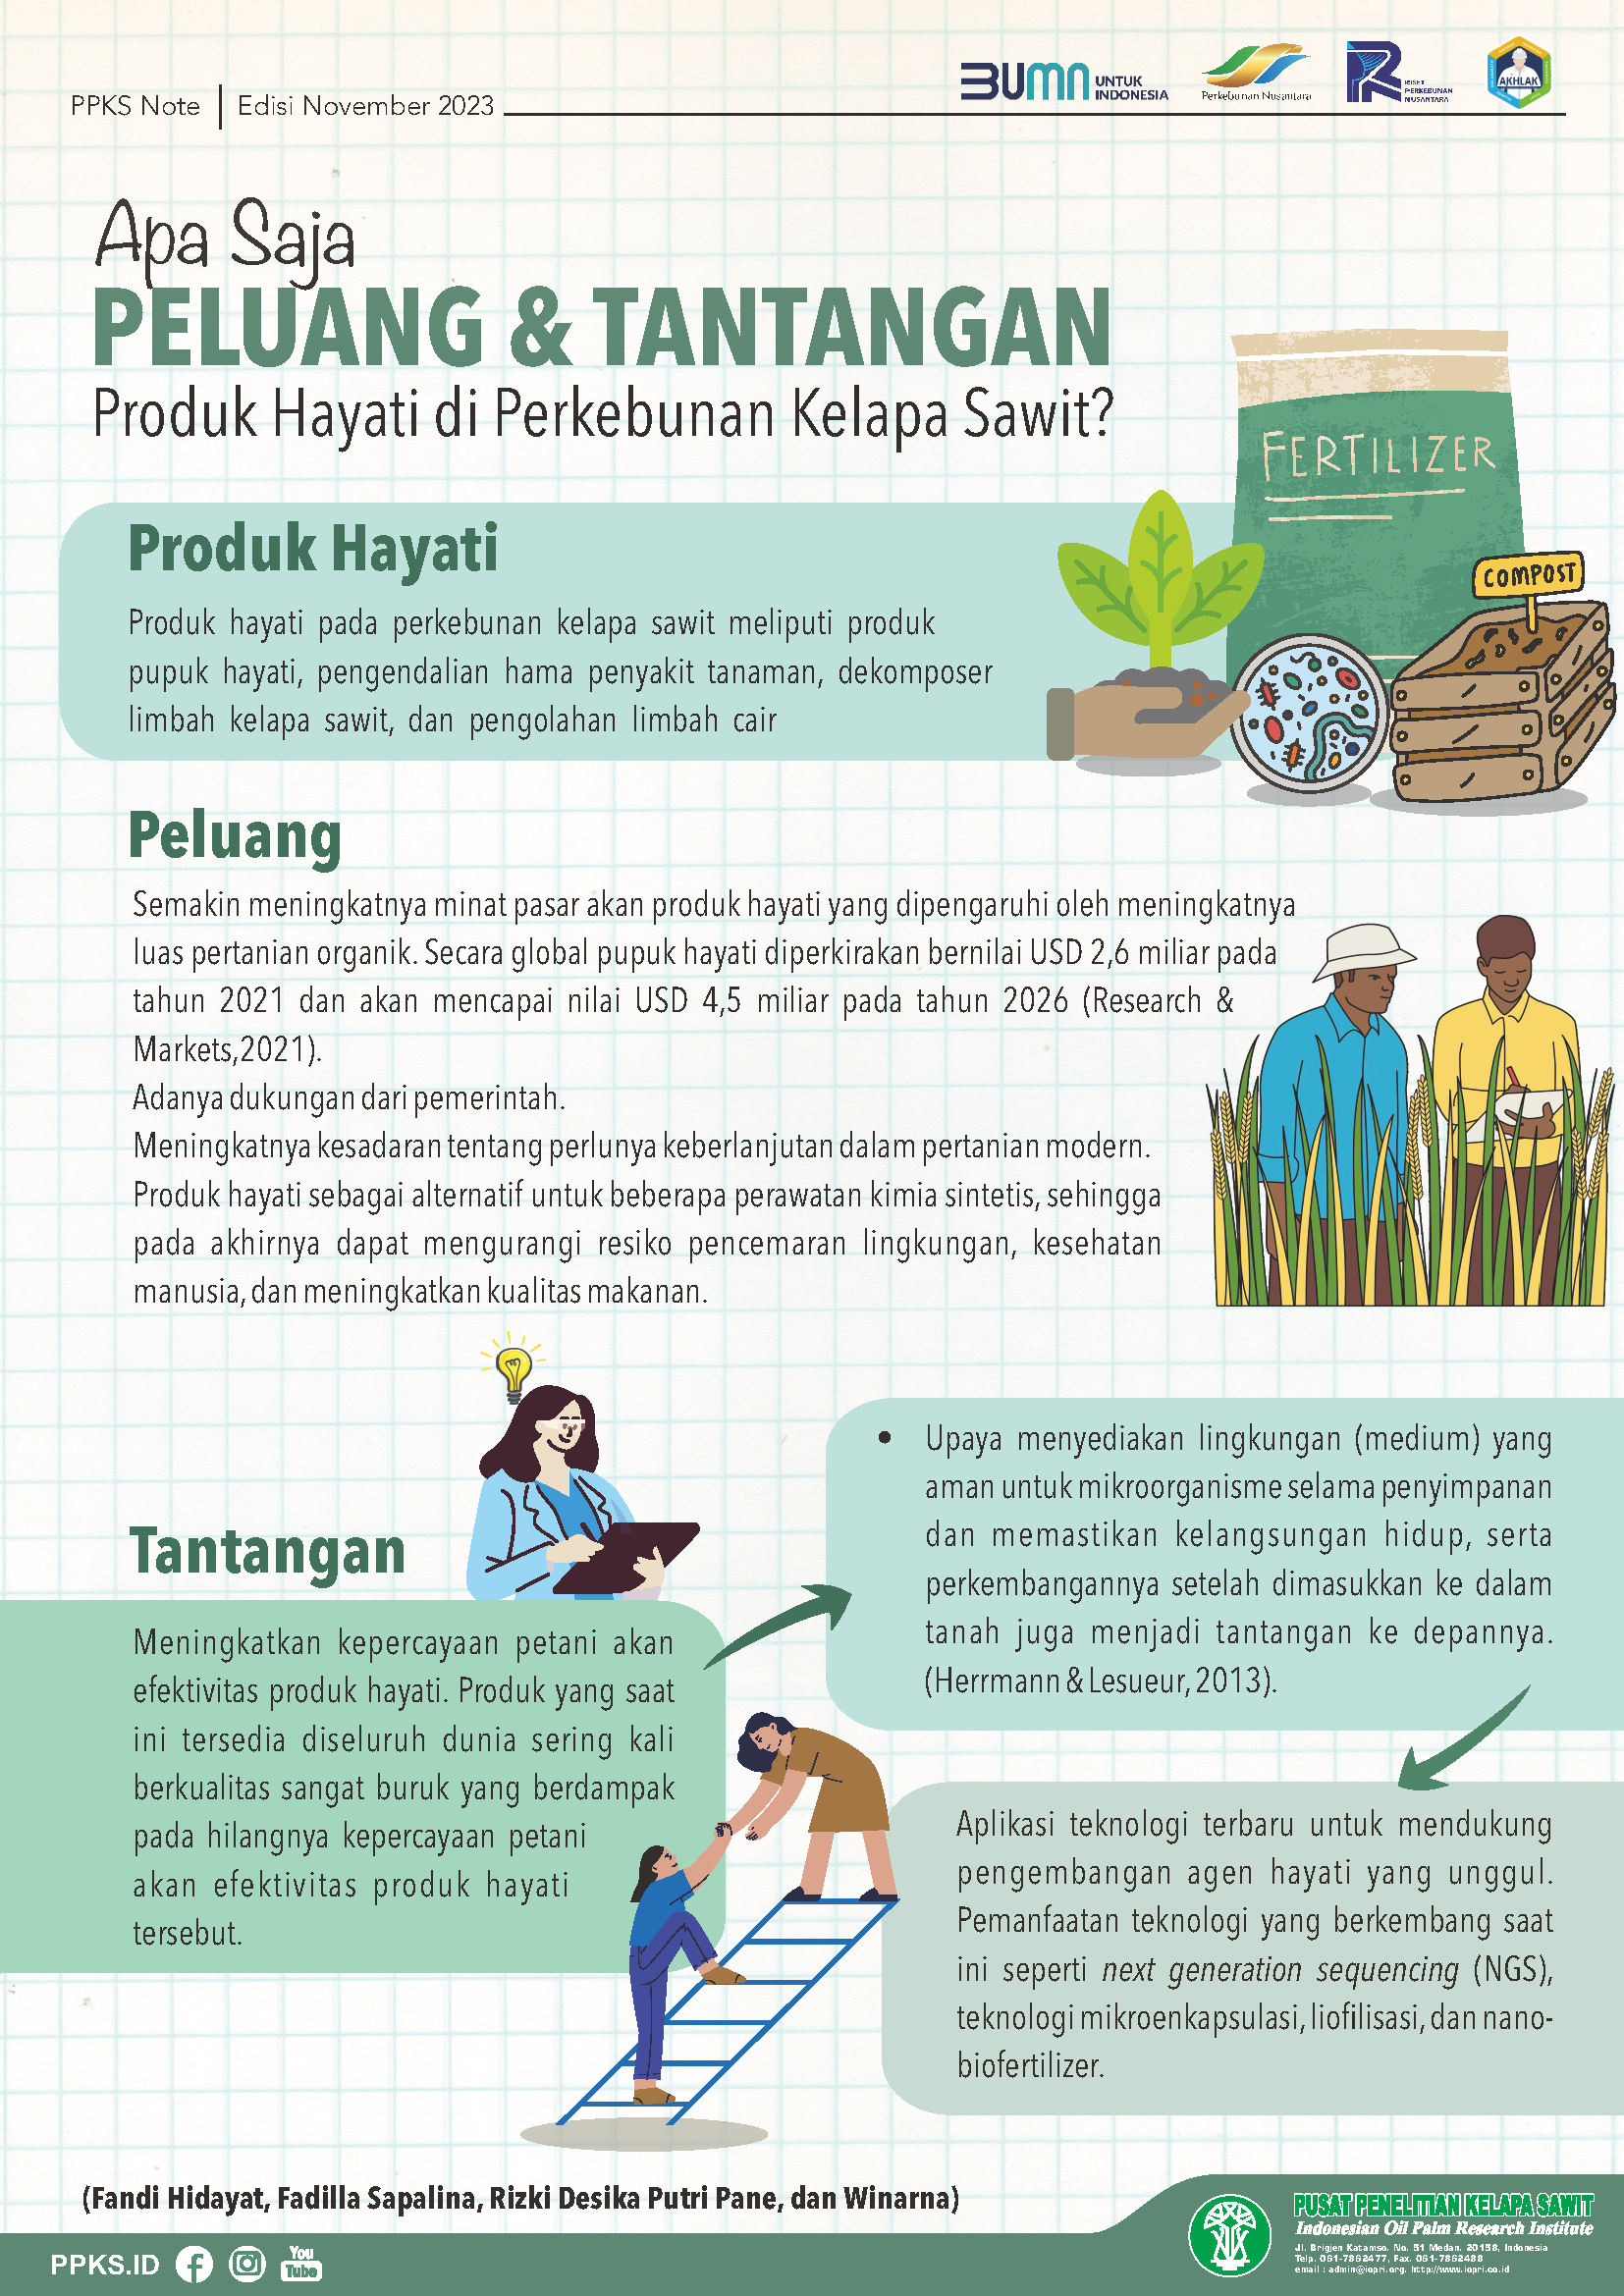 EDISI November 2023 - Apa Saja Peluang & Tantangan Produk Hayati di Perkebunan Kelapa Sawit?